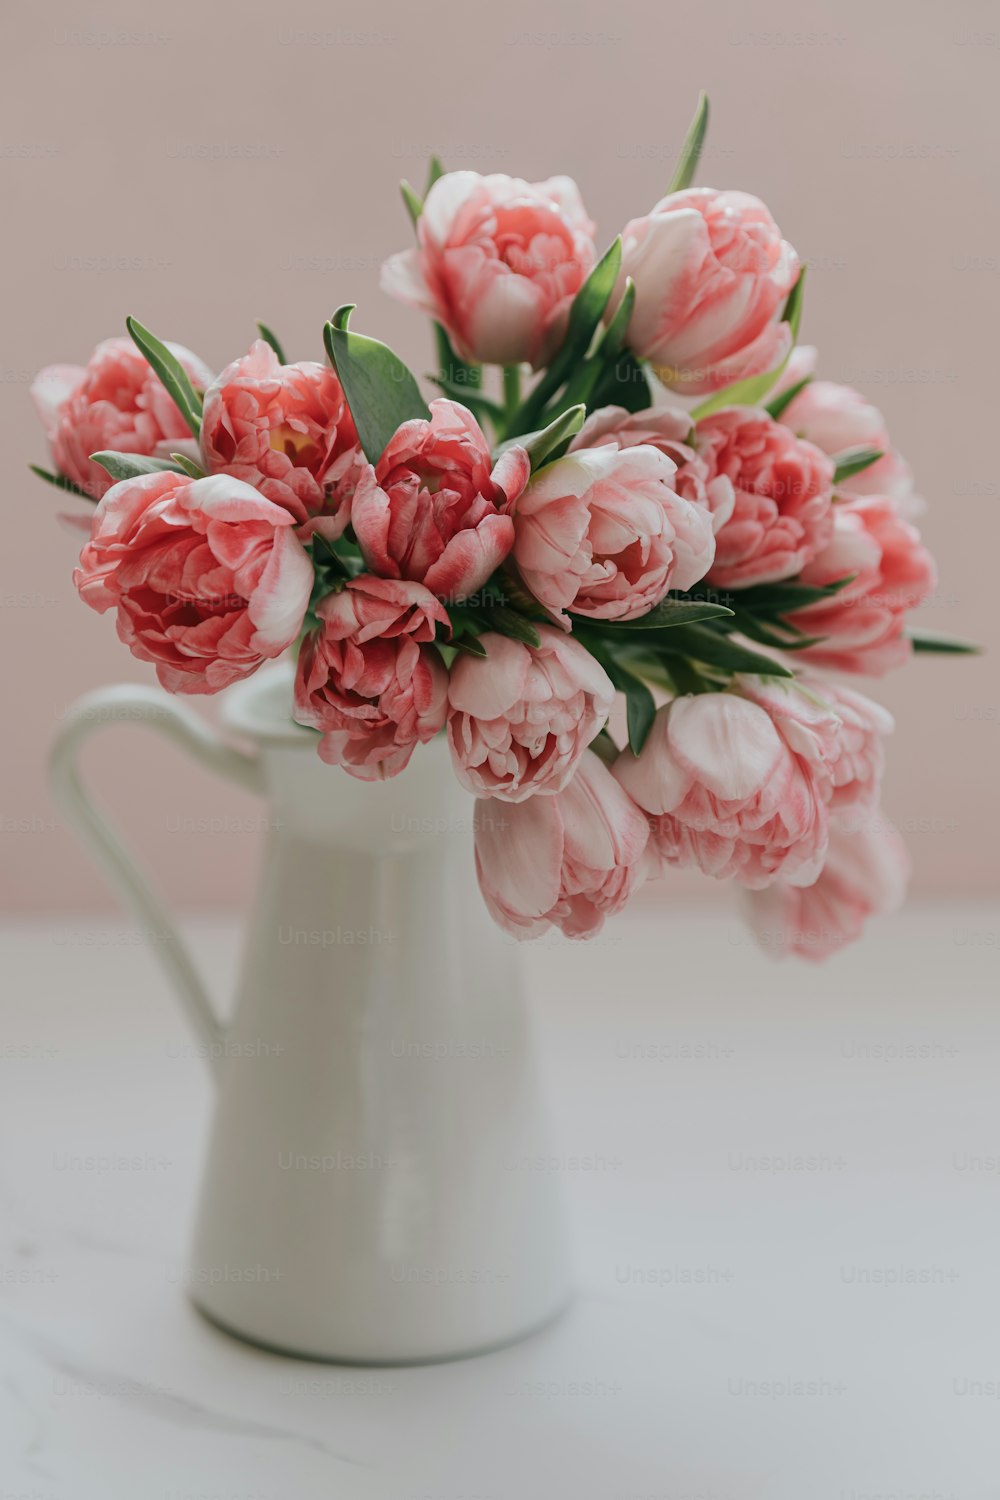 테이블 위에 분홍색 꽃으로 가득 찬 흰색 �꽃병